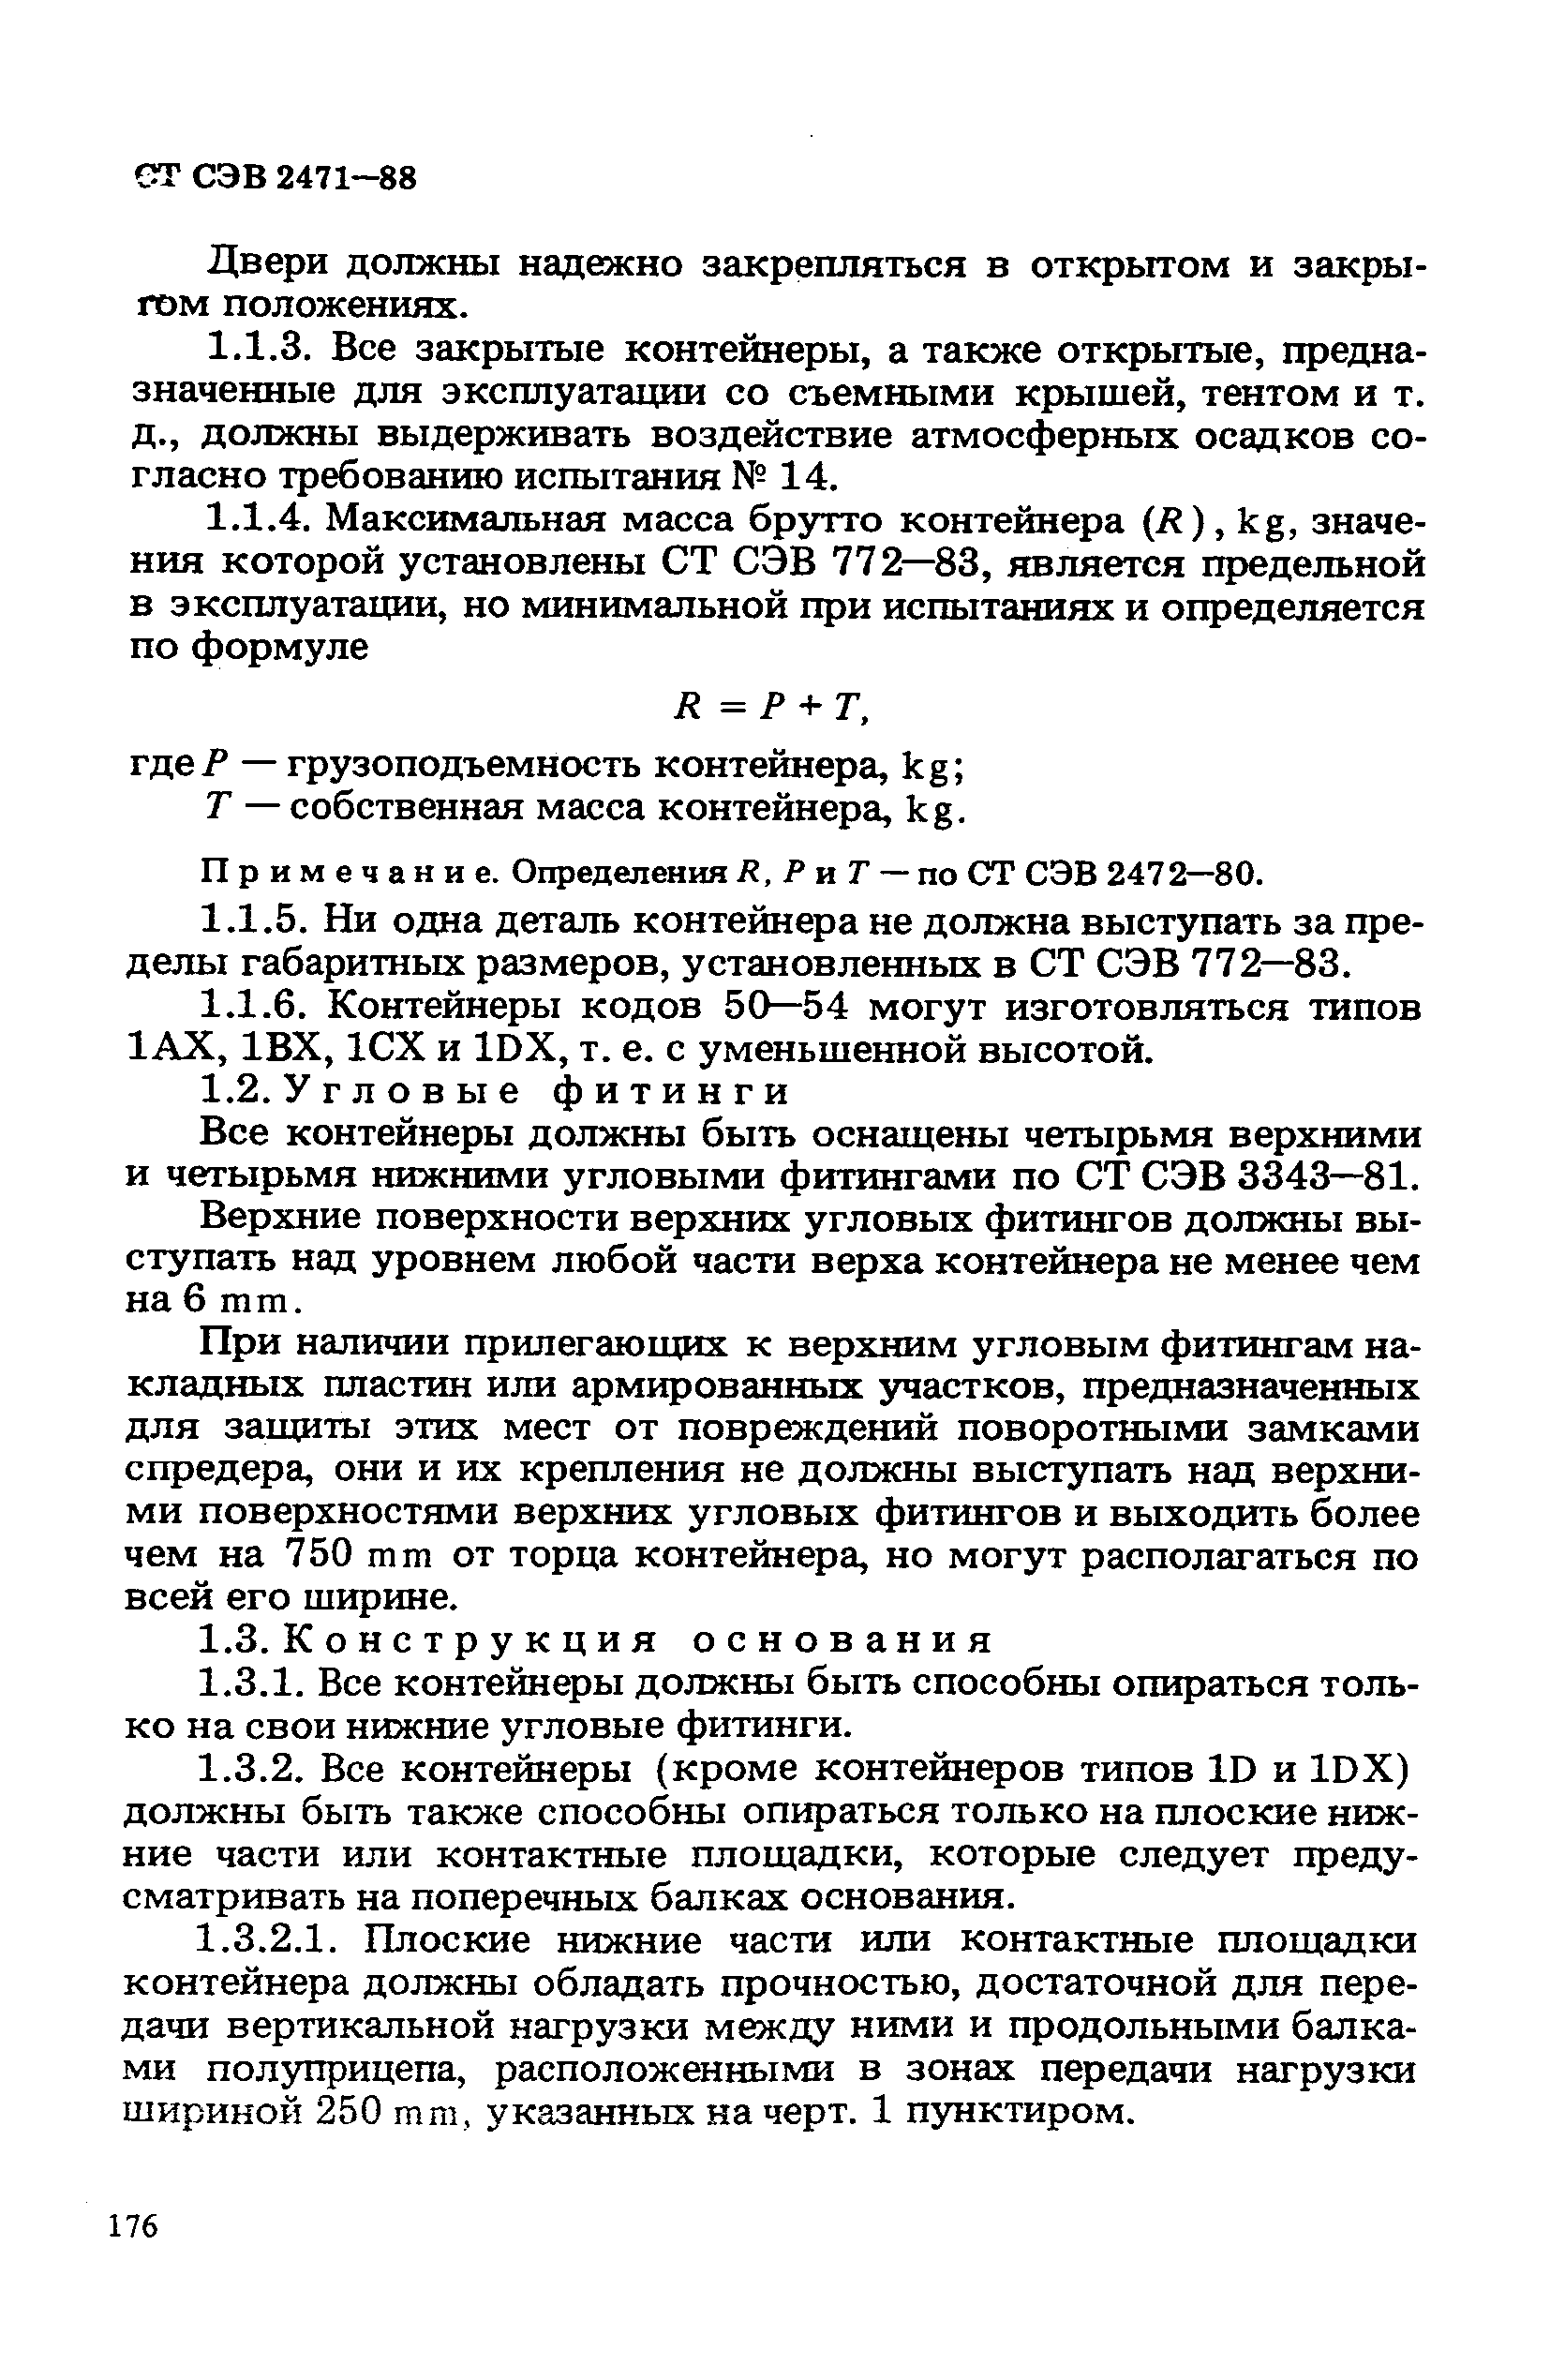 СТ СЭВ 2471-88